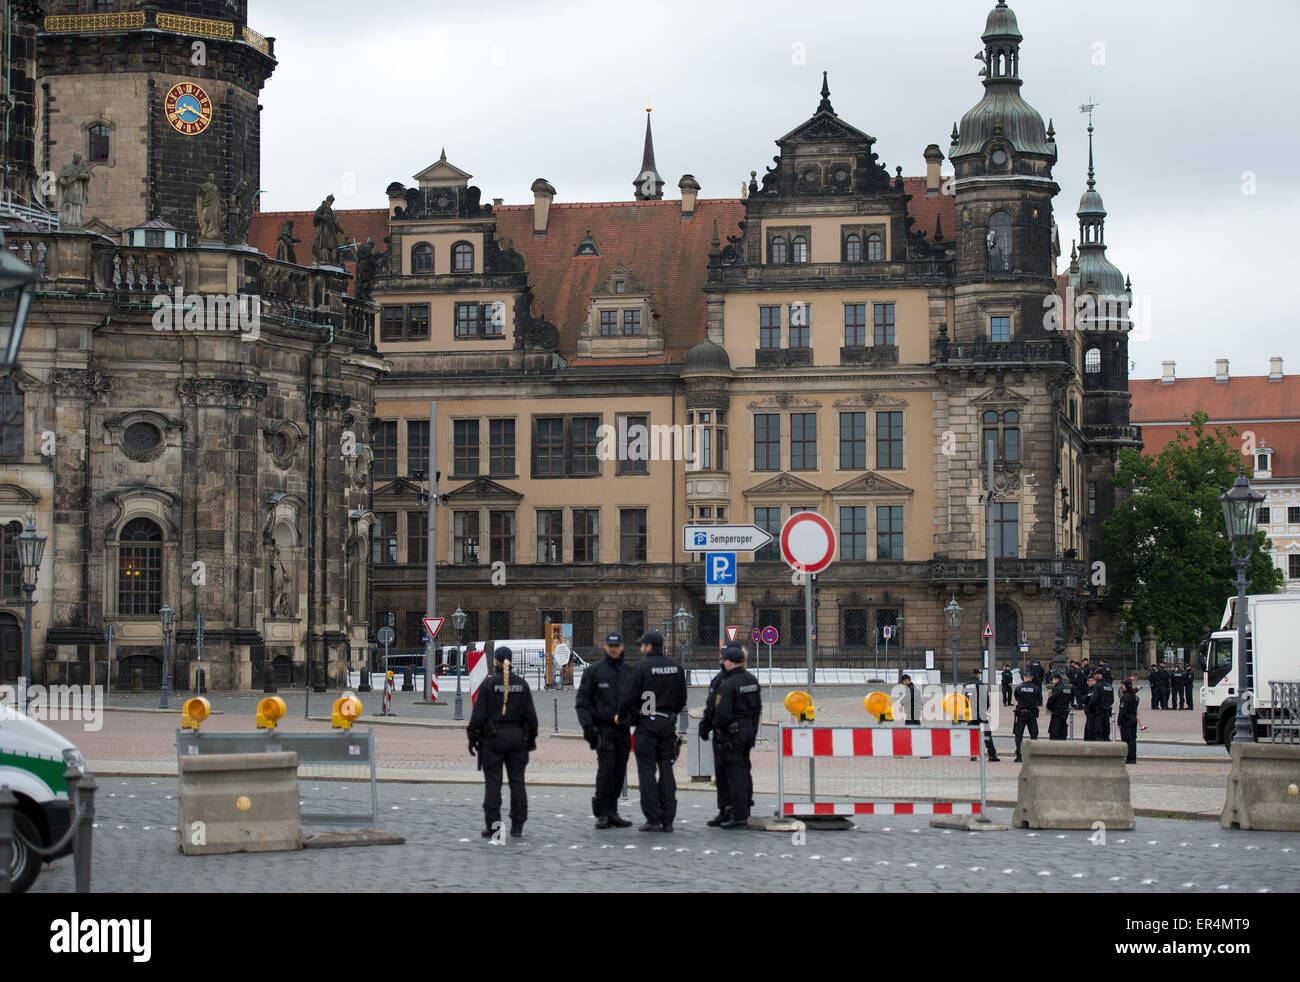 La polizia fissare la zona intorno al Palazzo Reale di Dresda, in Germania, il 27 maggio 2015. Dal 27 maggio fino al 29 maggio, mondiale dei ministri delle finanze e dei governatori delle banche centrali del G7 sette maggiori paesi industrializzati incontrare a Dresda, in Germania. Foto: ARNO BURGI/dpa Foto Stock